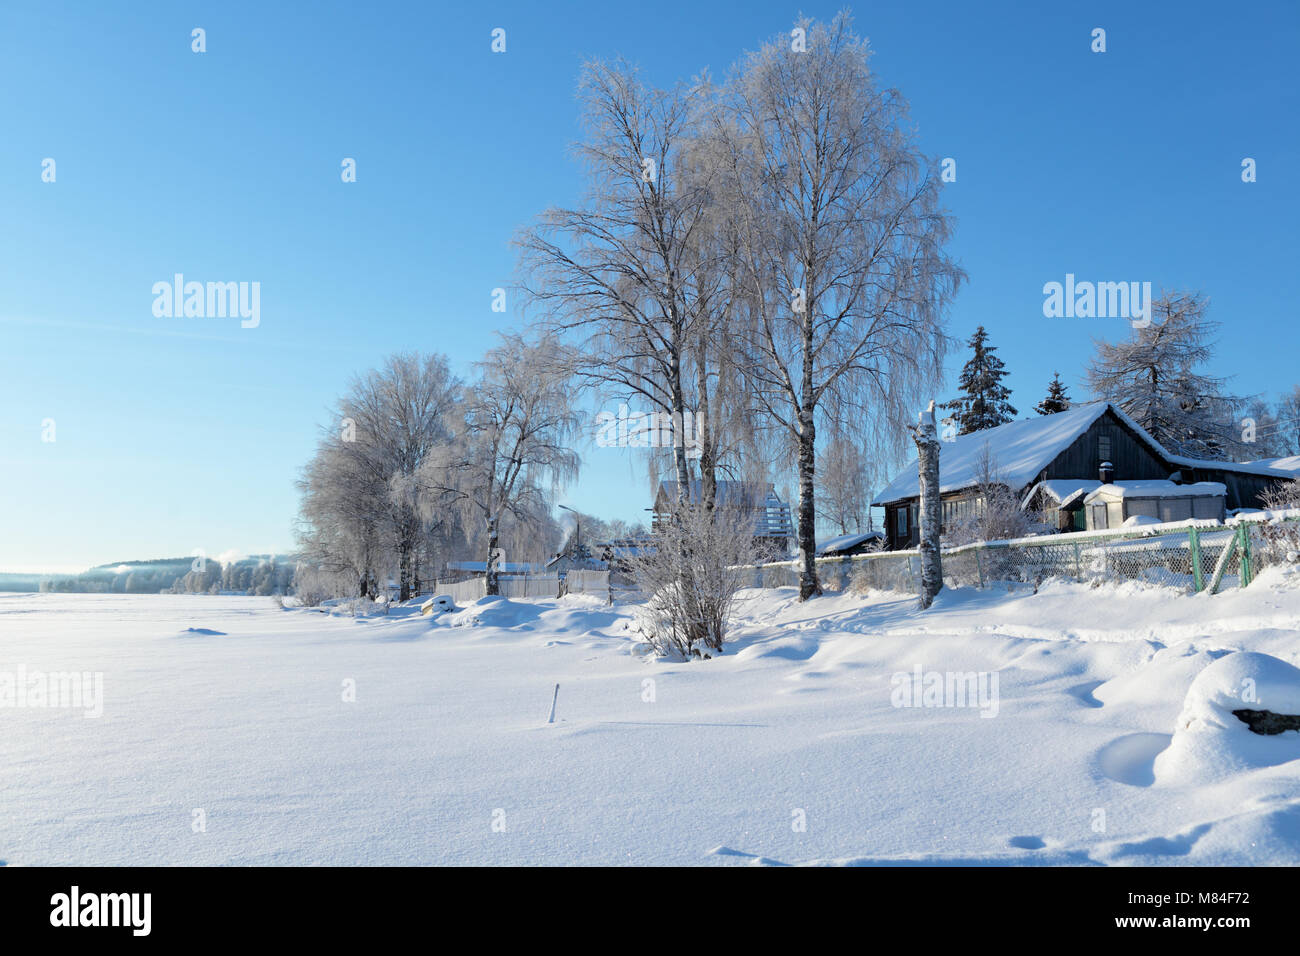 Winter rural landscape in Karelia, Russia Stock Photo